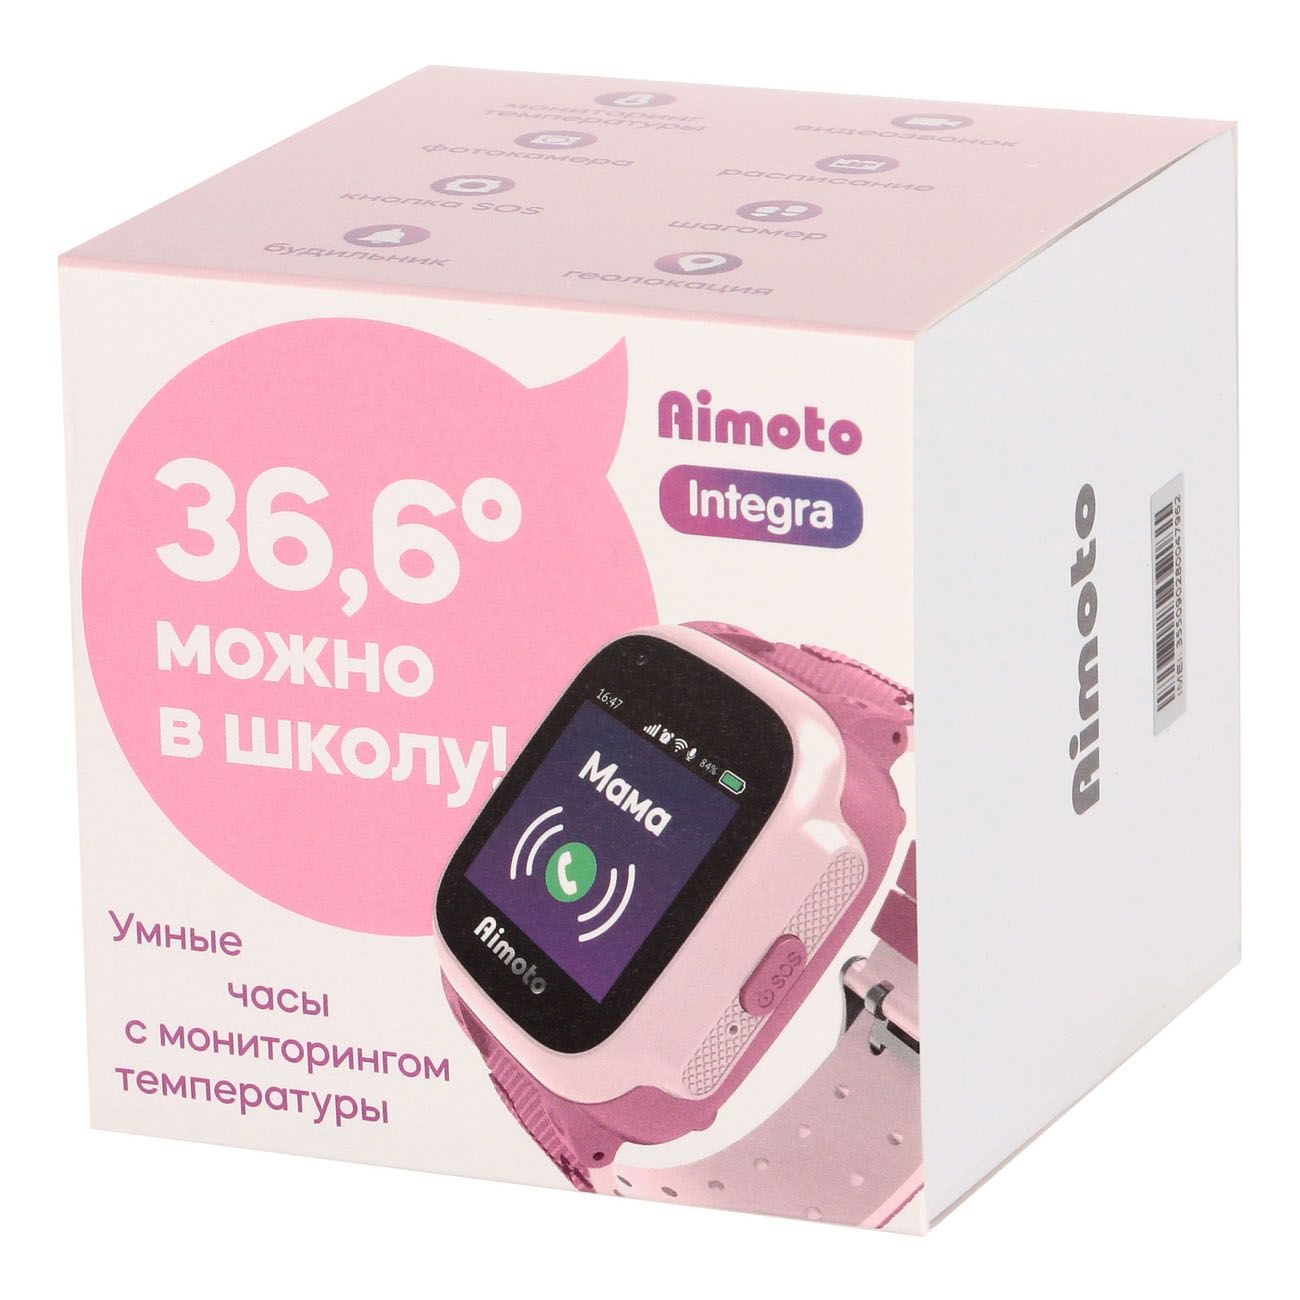 Часы aimoto розовые. Детские смарт часы Аймото 4g с GPS. Часы с трекером Aimoto Integra 4g. Детские умные часы Aimoto Integra 4g. Aimoto Pro 4g.